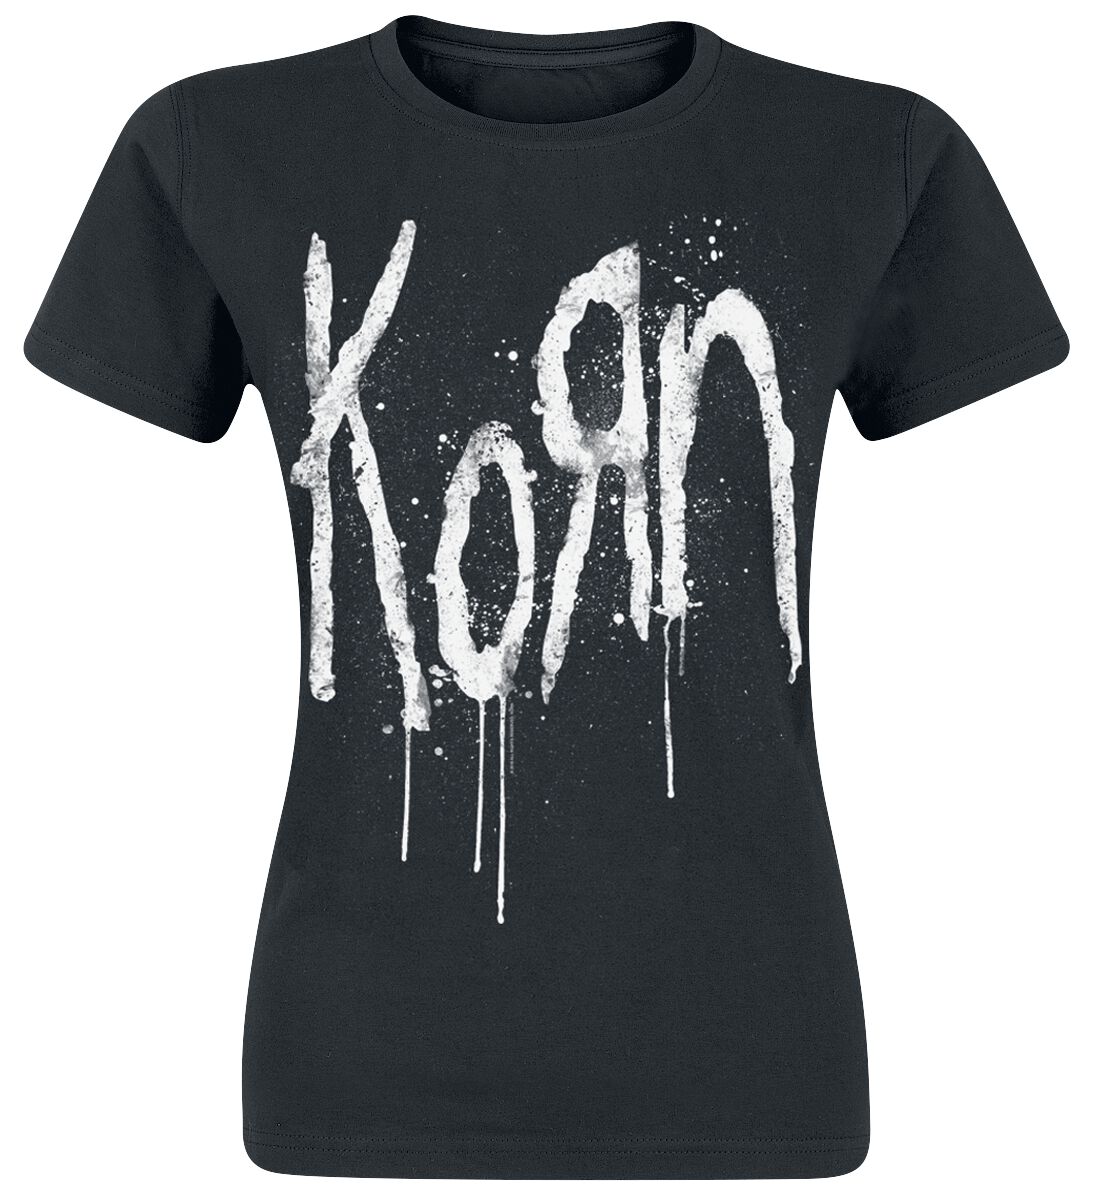 T-Shirt Manches courtes de Korn - Still A Freak - S à XXL - pour Femme - noir